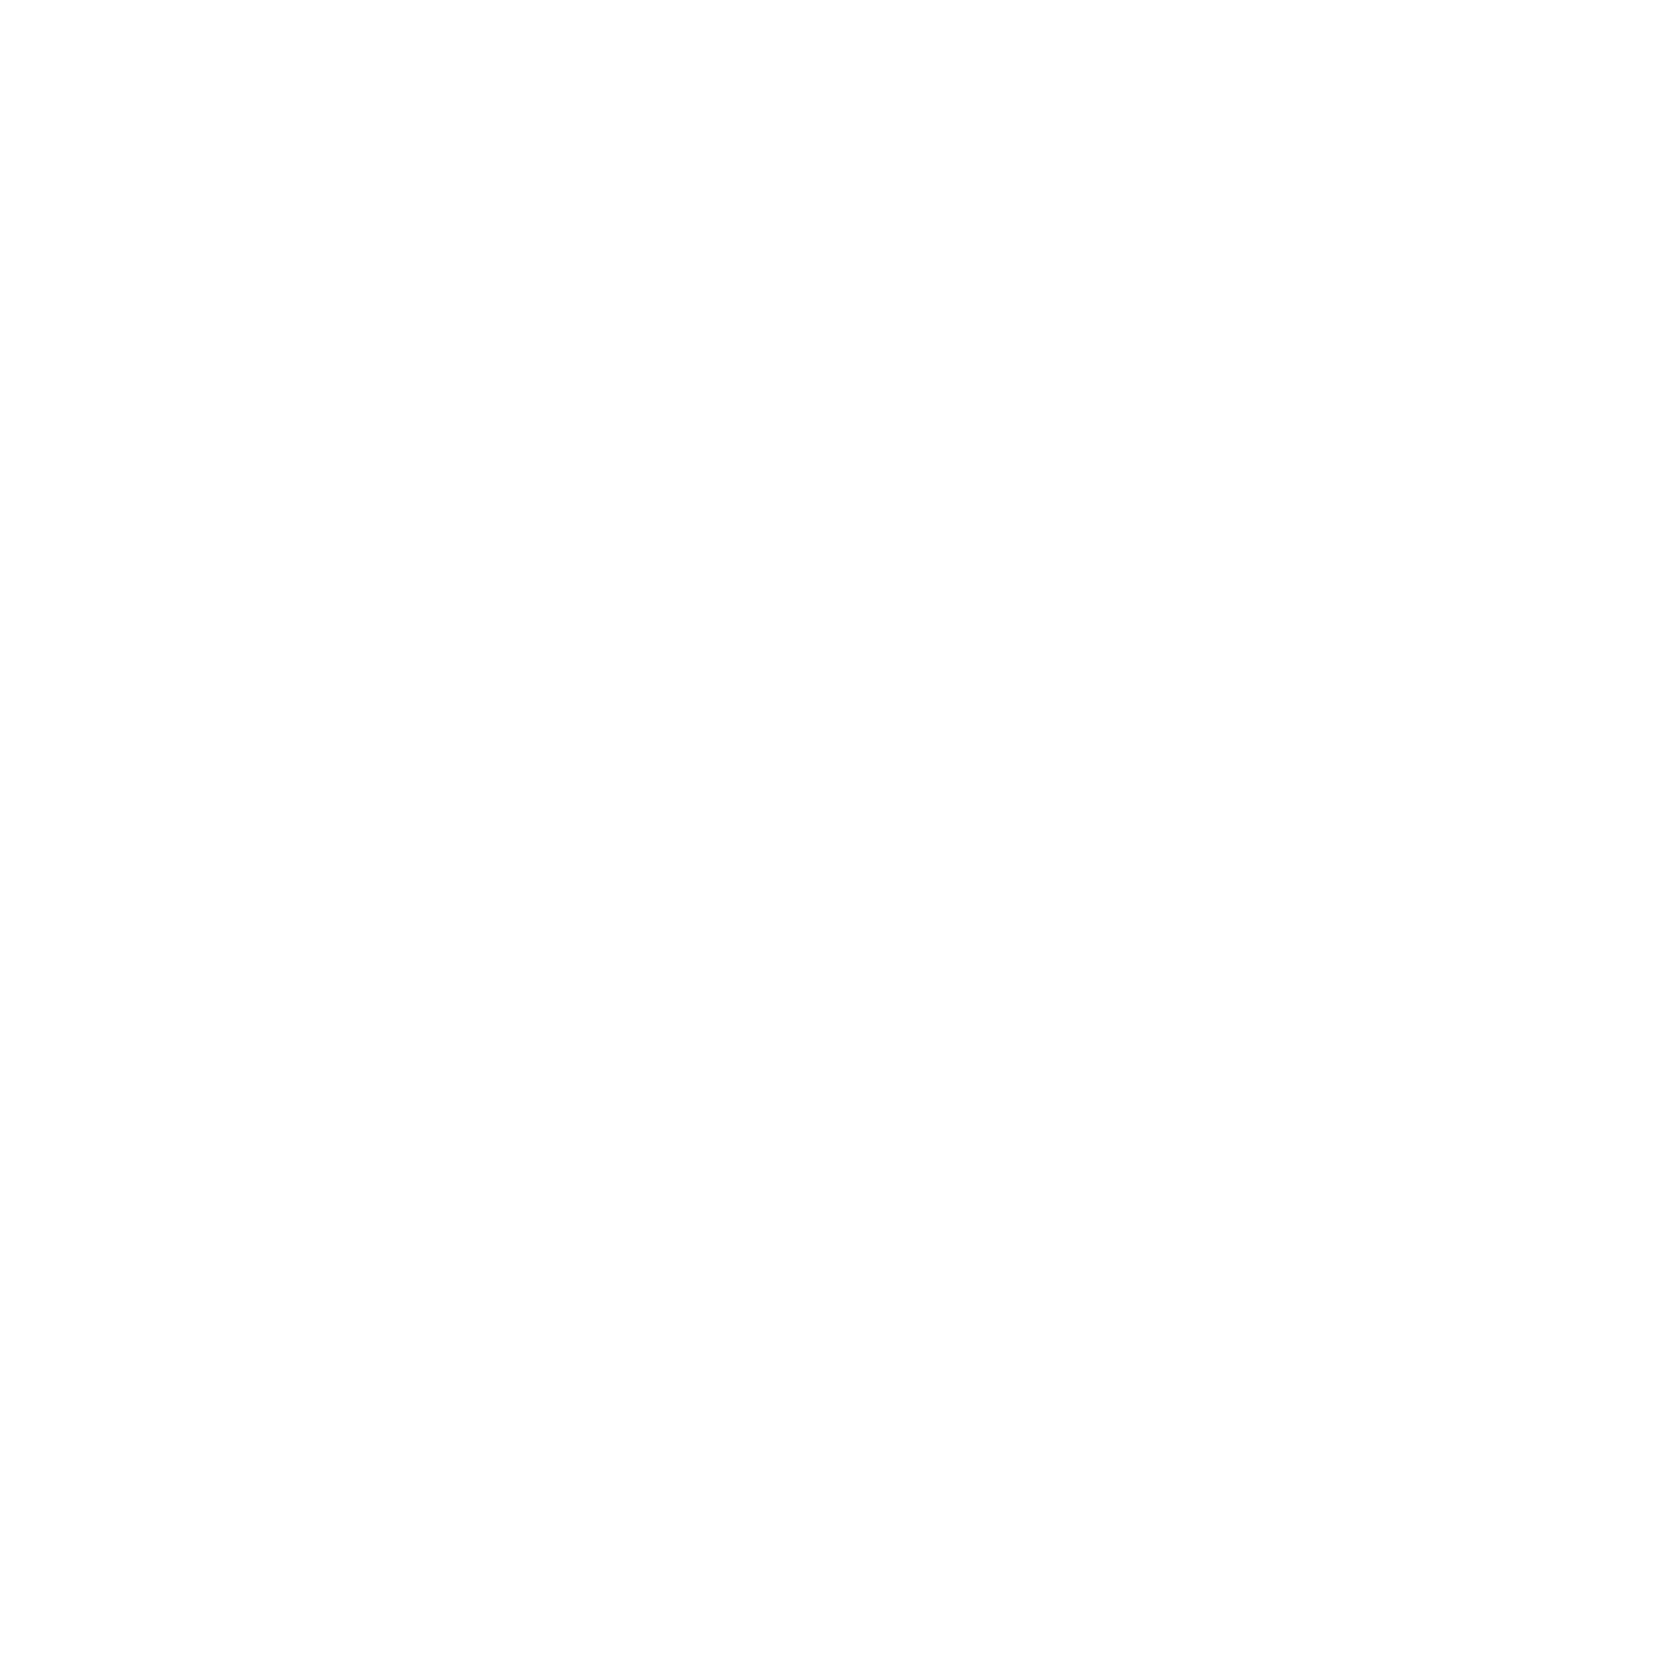 Певица Кира Малыгина нежно шепчет в микрофон на концерте в Москве, презентация нового альбома, Топ-20 концертный фотограф Георгий Безбородов, Москва, Анталия.